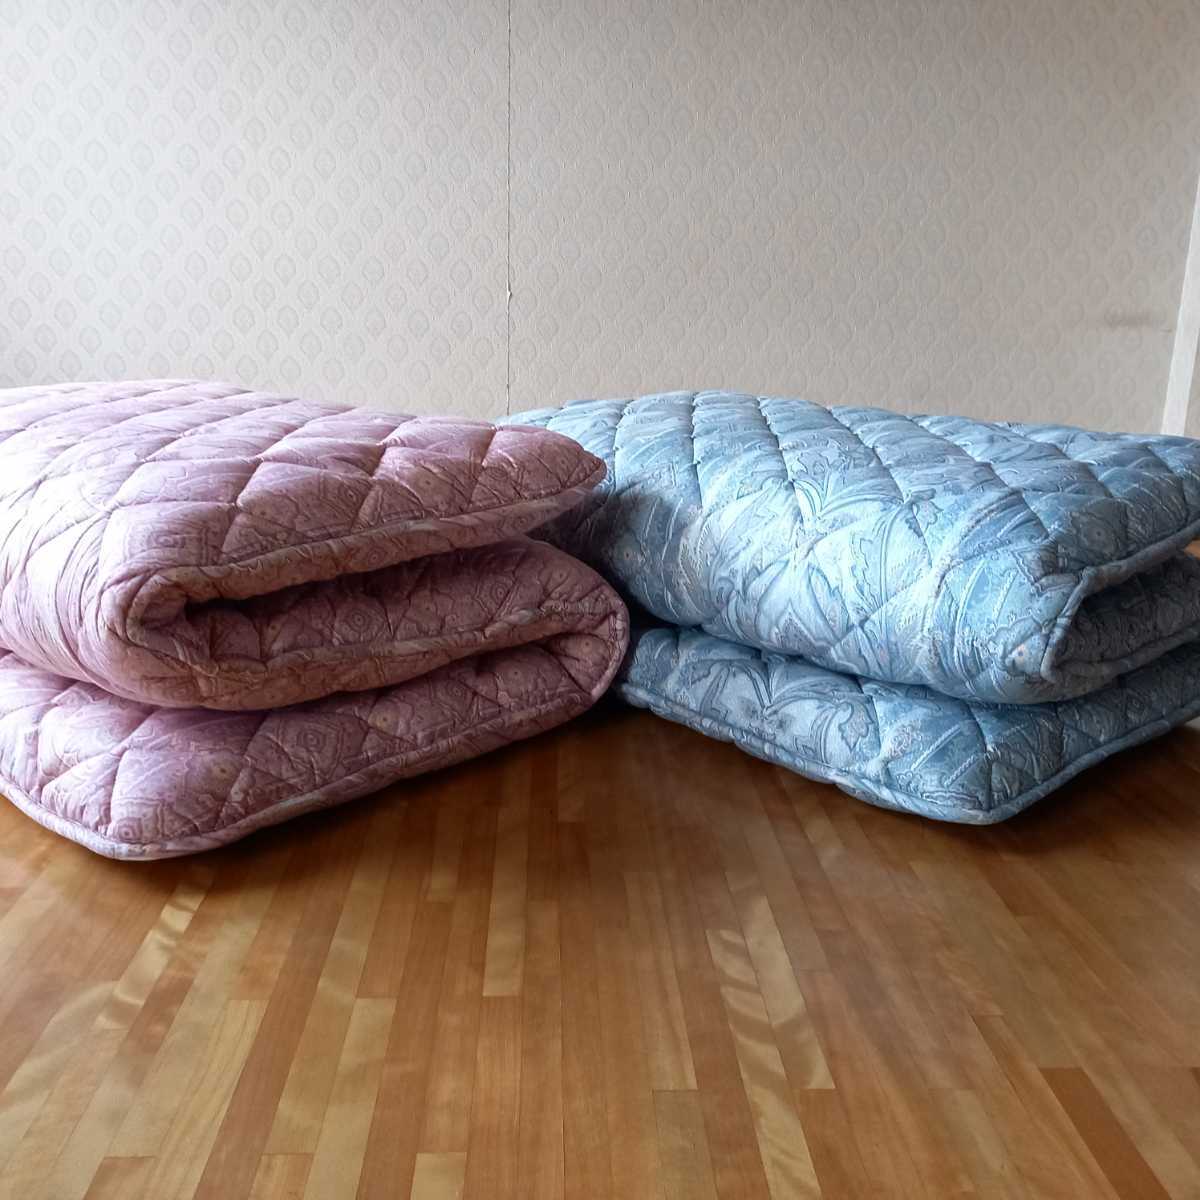 体圧分散 敷布団 2枚セット ホテル仕様 多層 極厚 清潔 安心 日本製 シングル その他 羽毛布団 掛け布団 こたつ布団 枕 出品中です。